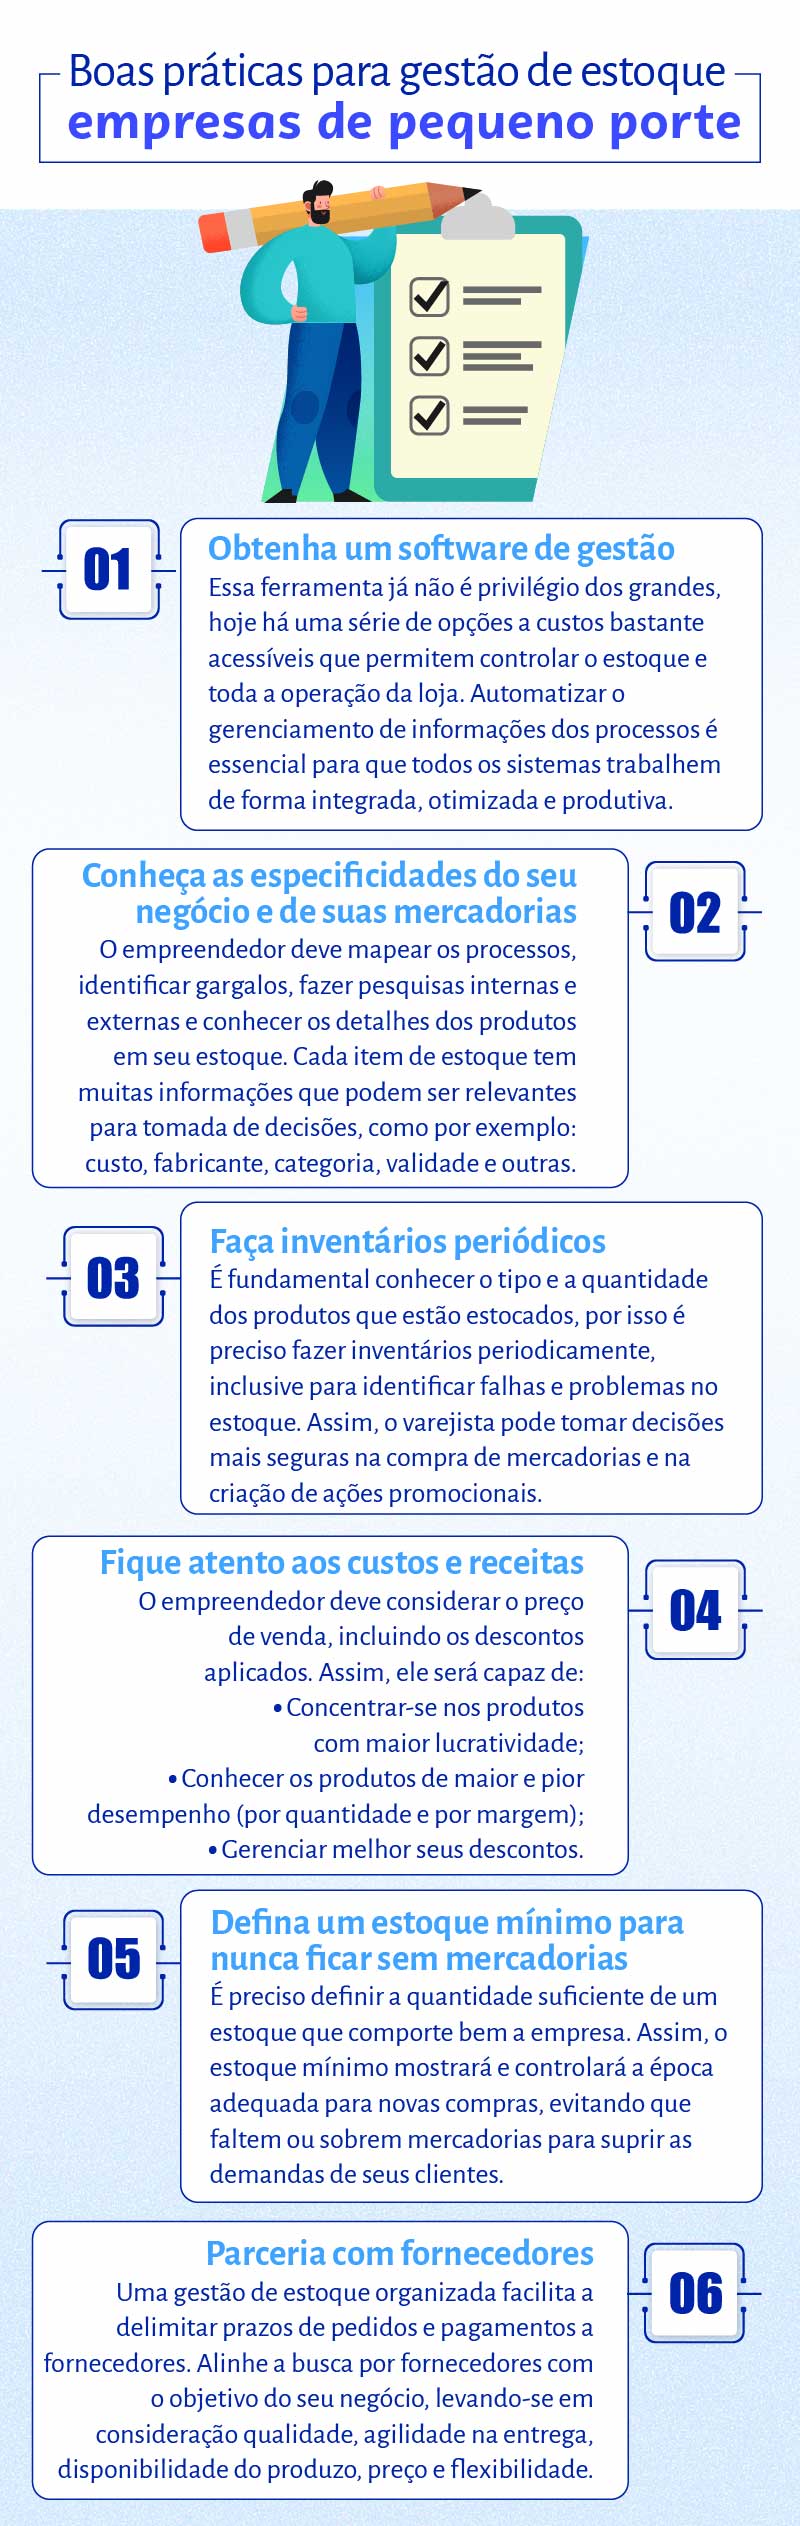 Dia da Micro e Pequena Empresa evidencia a importância dos empreendedores  para o Brasil